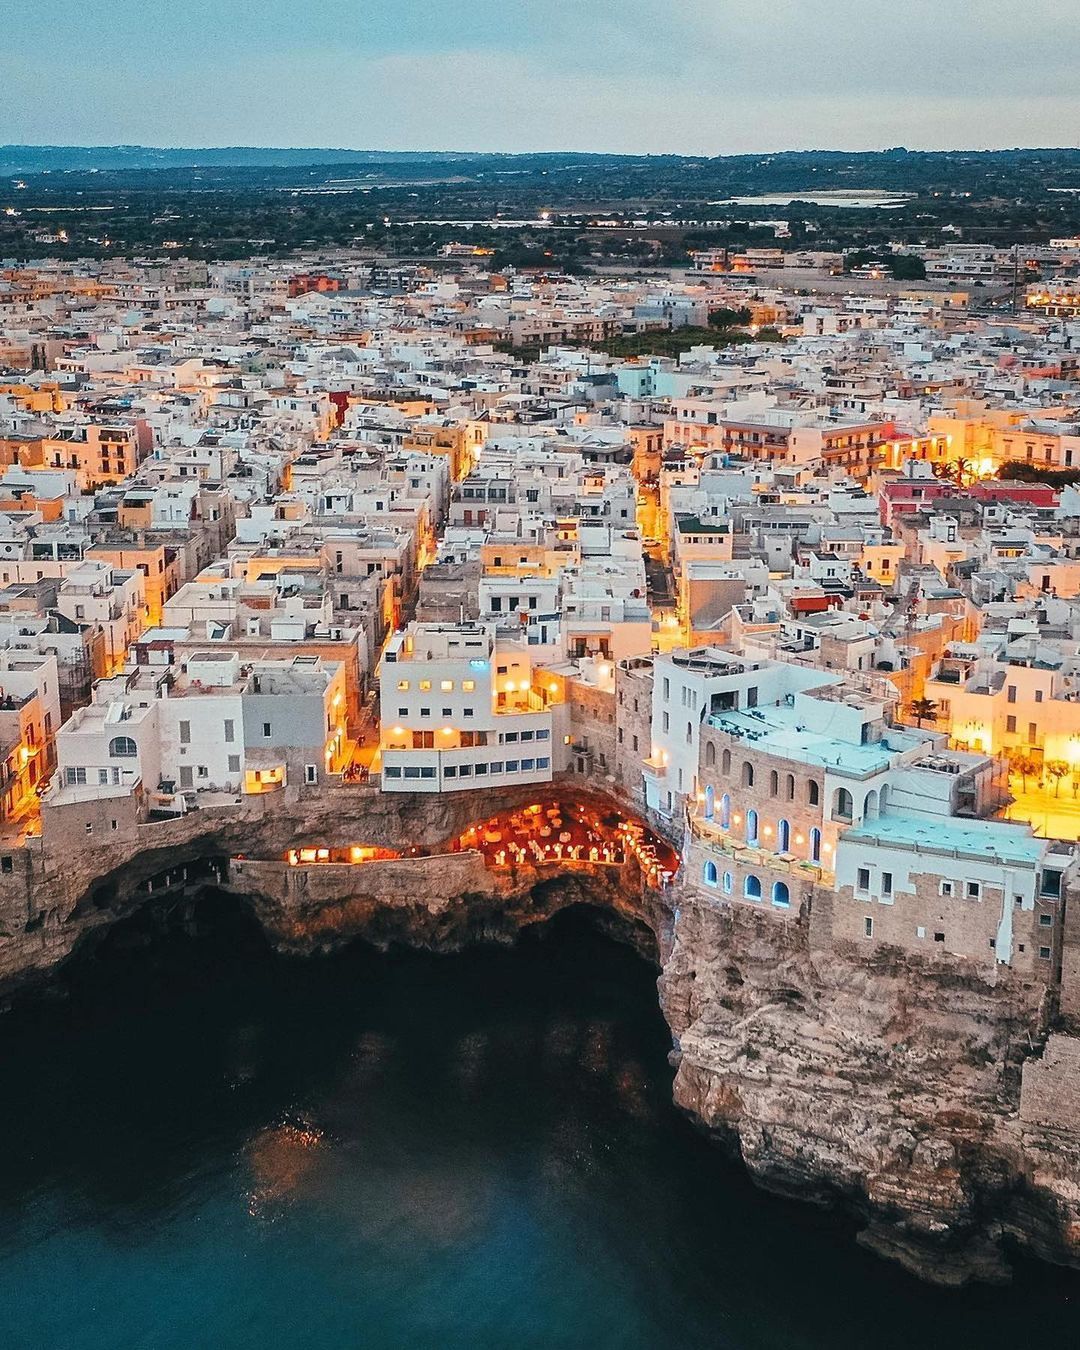 Не Рим: топ-5 місць в Італії, де виходять найпрекрасніші знімки